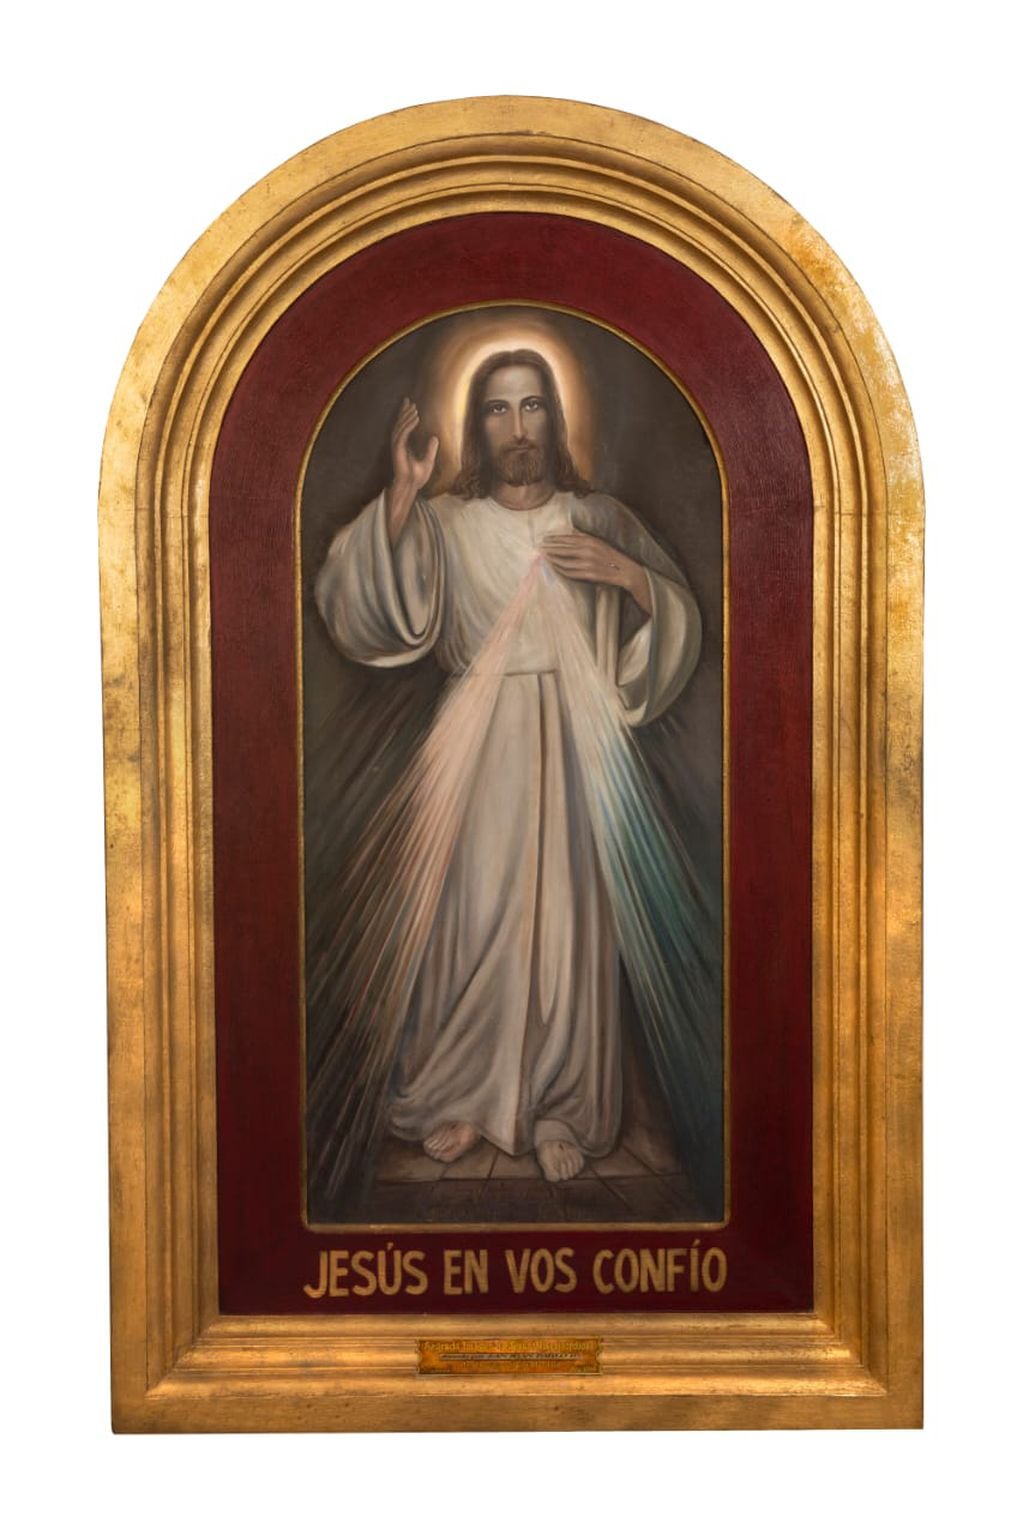 La imagen de Jesús Misericordioso pintada por un pintor polaco e inspirada en las visiones de Santa María Faustina fue donado en 1985 a Mendoza, y recibido por la pianista sanmartiniana Amelia Bertolini.